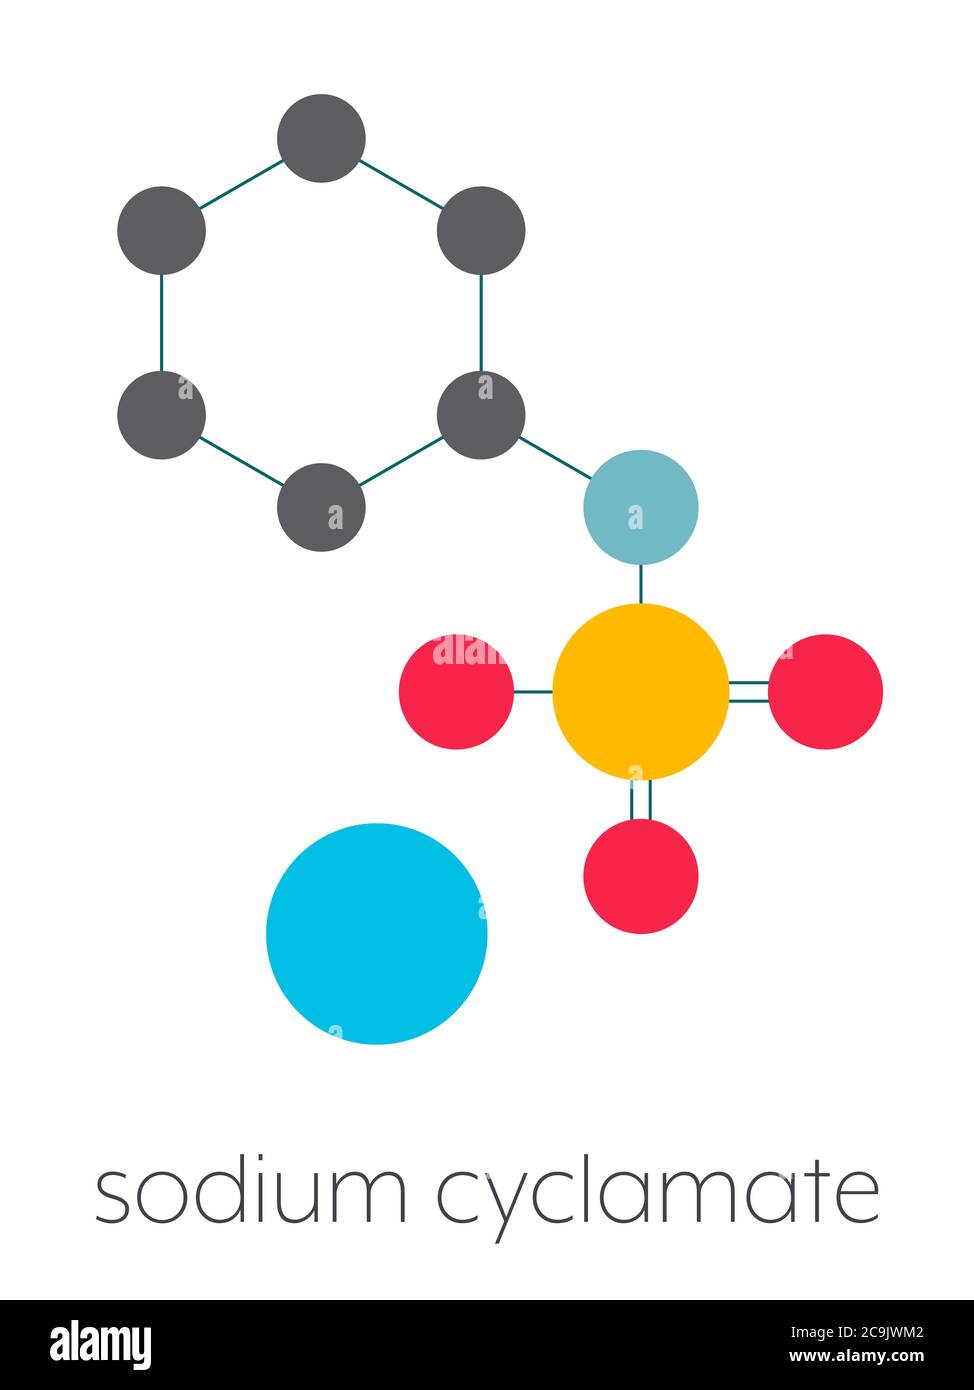 Natriumcyclamat künstliches Süßstoffmolekül. Stilisierte Skelettformel (chemische Struktur). Atome werden als farbcodierte Kreise dargestellt, die durch Th verbunden sind Stockfoto